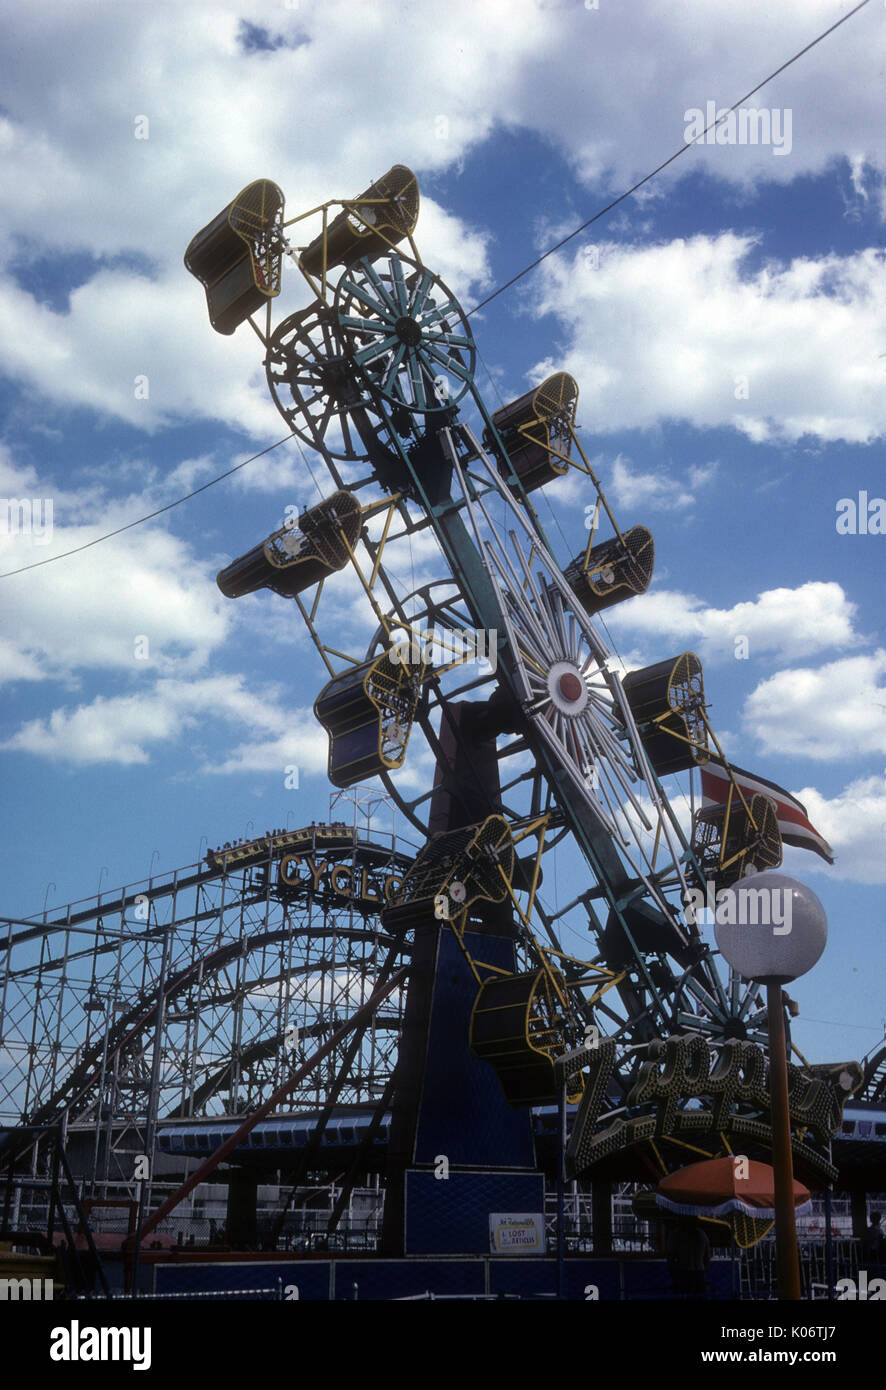 zipper amusement park vintage ride Stock Photo